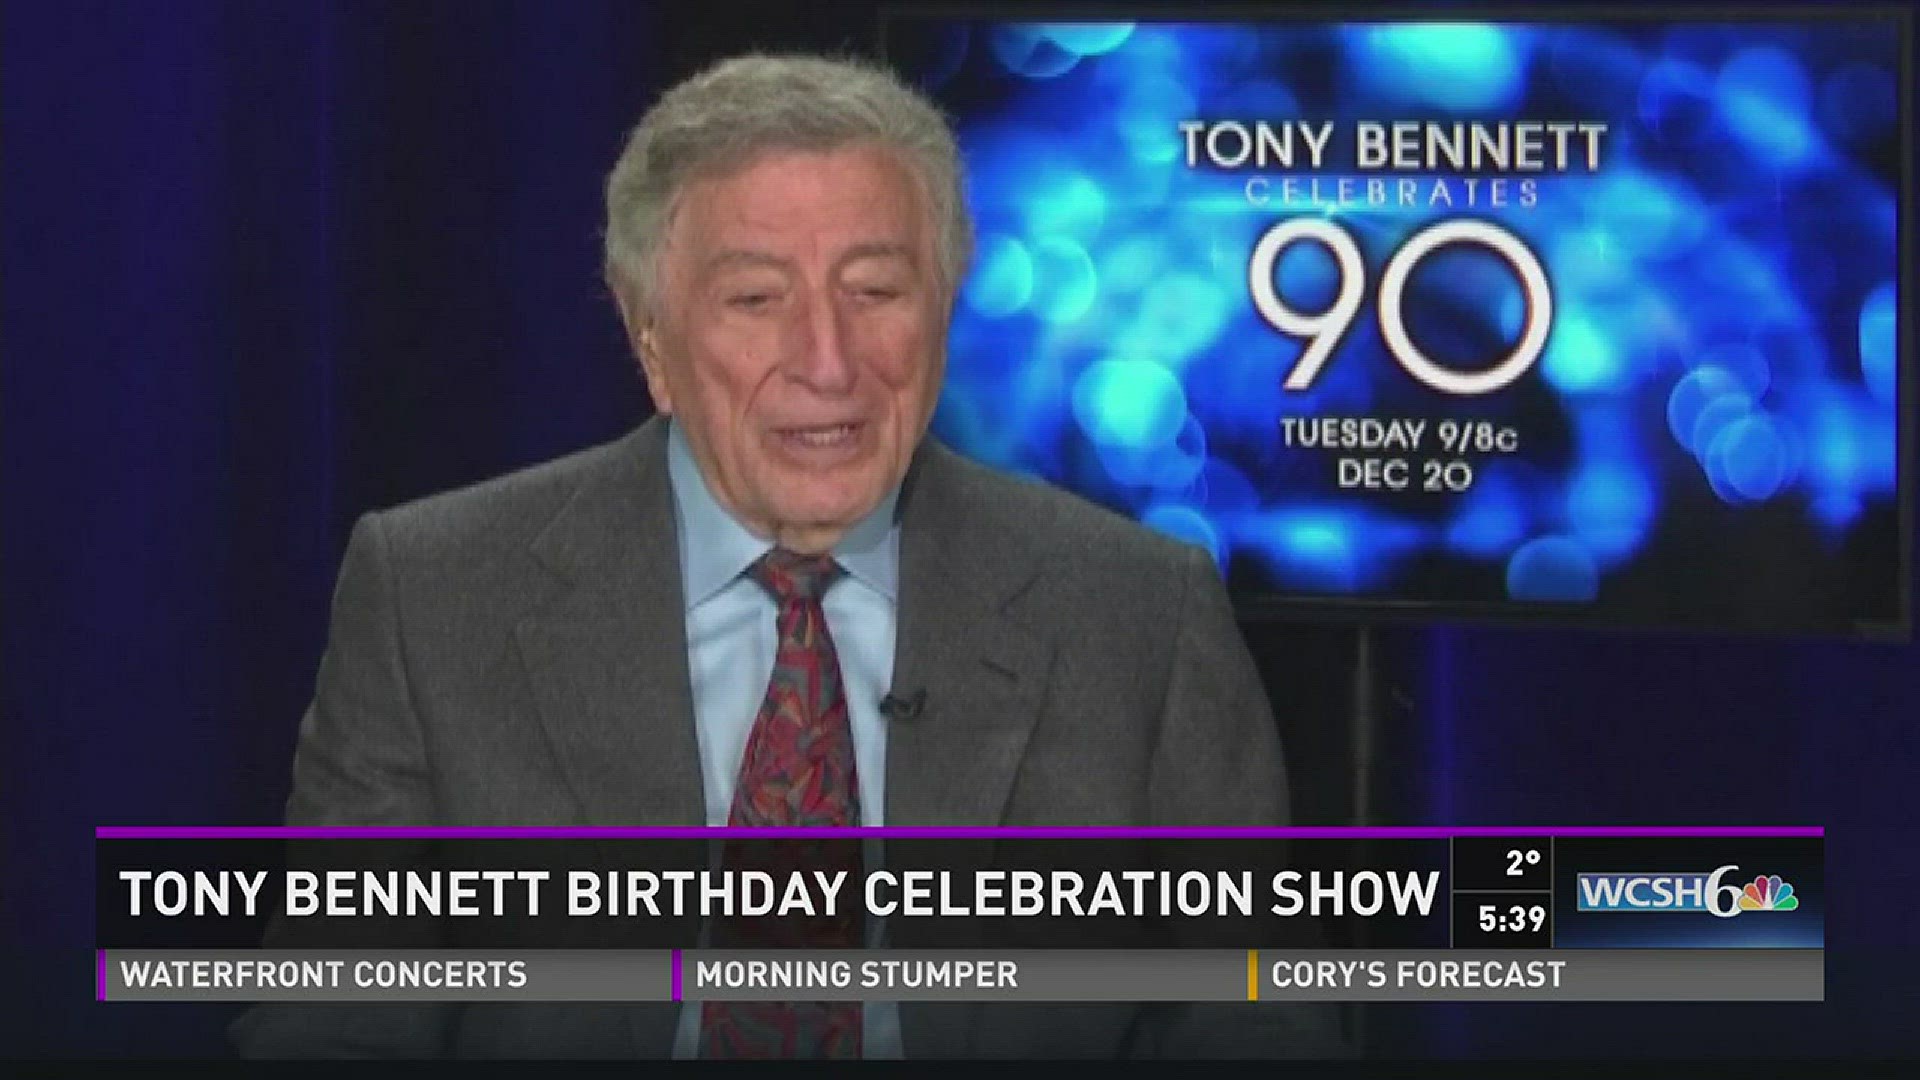 Tony Bennett birthday celebration show